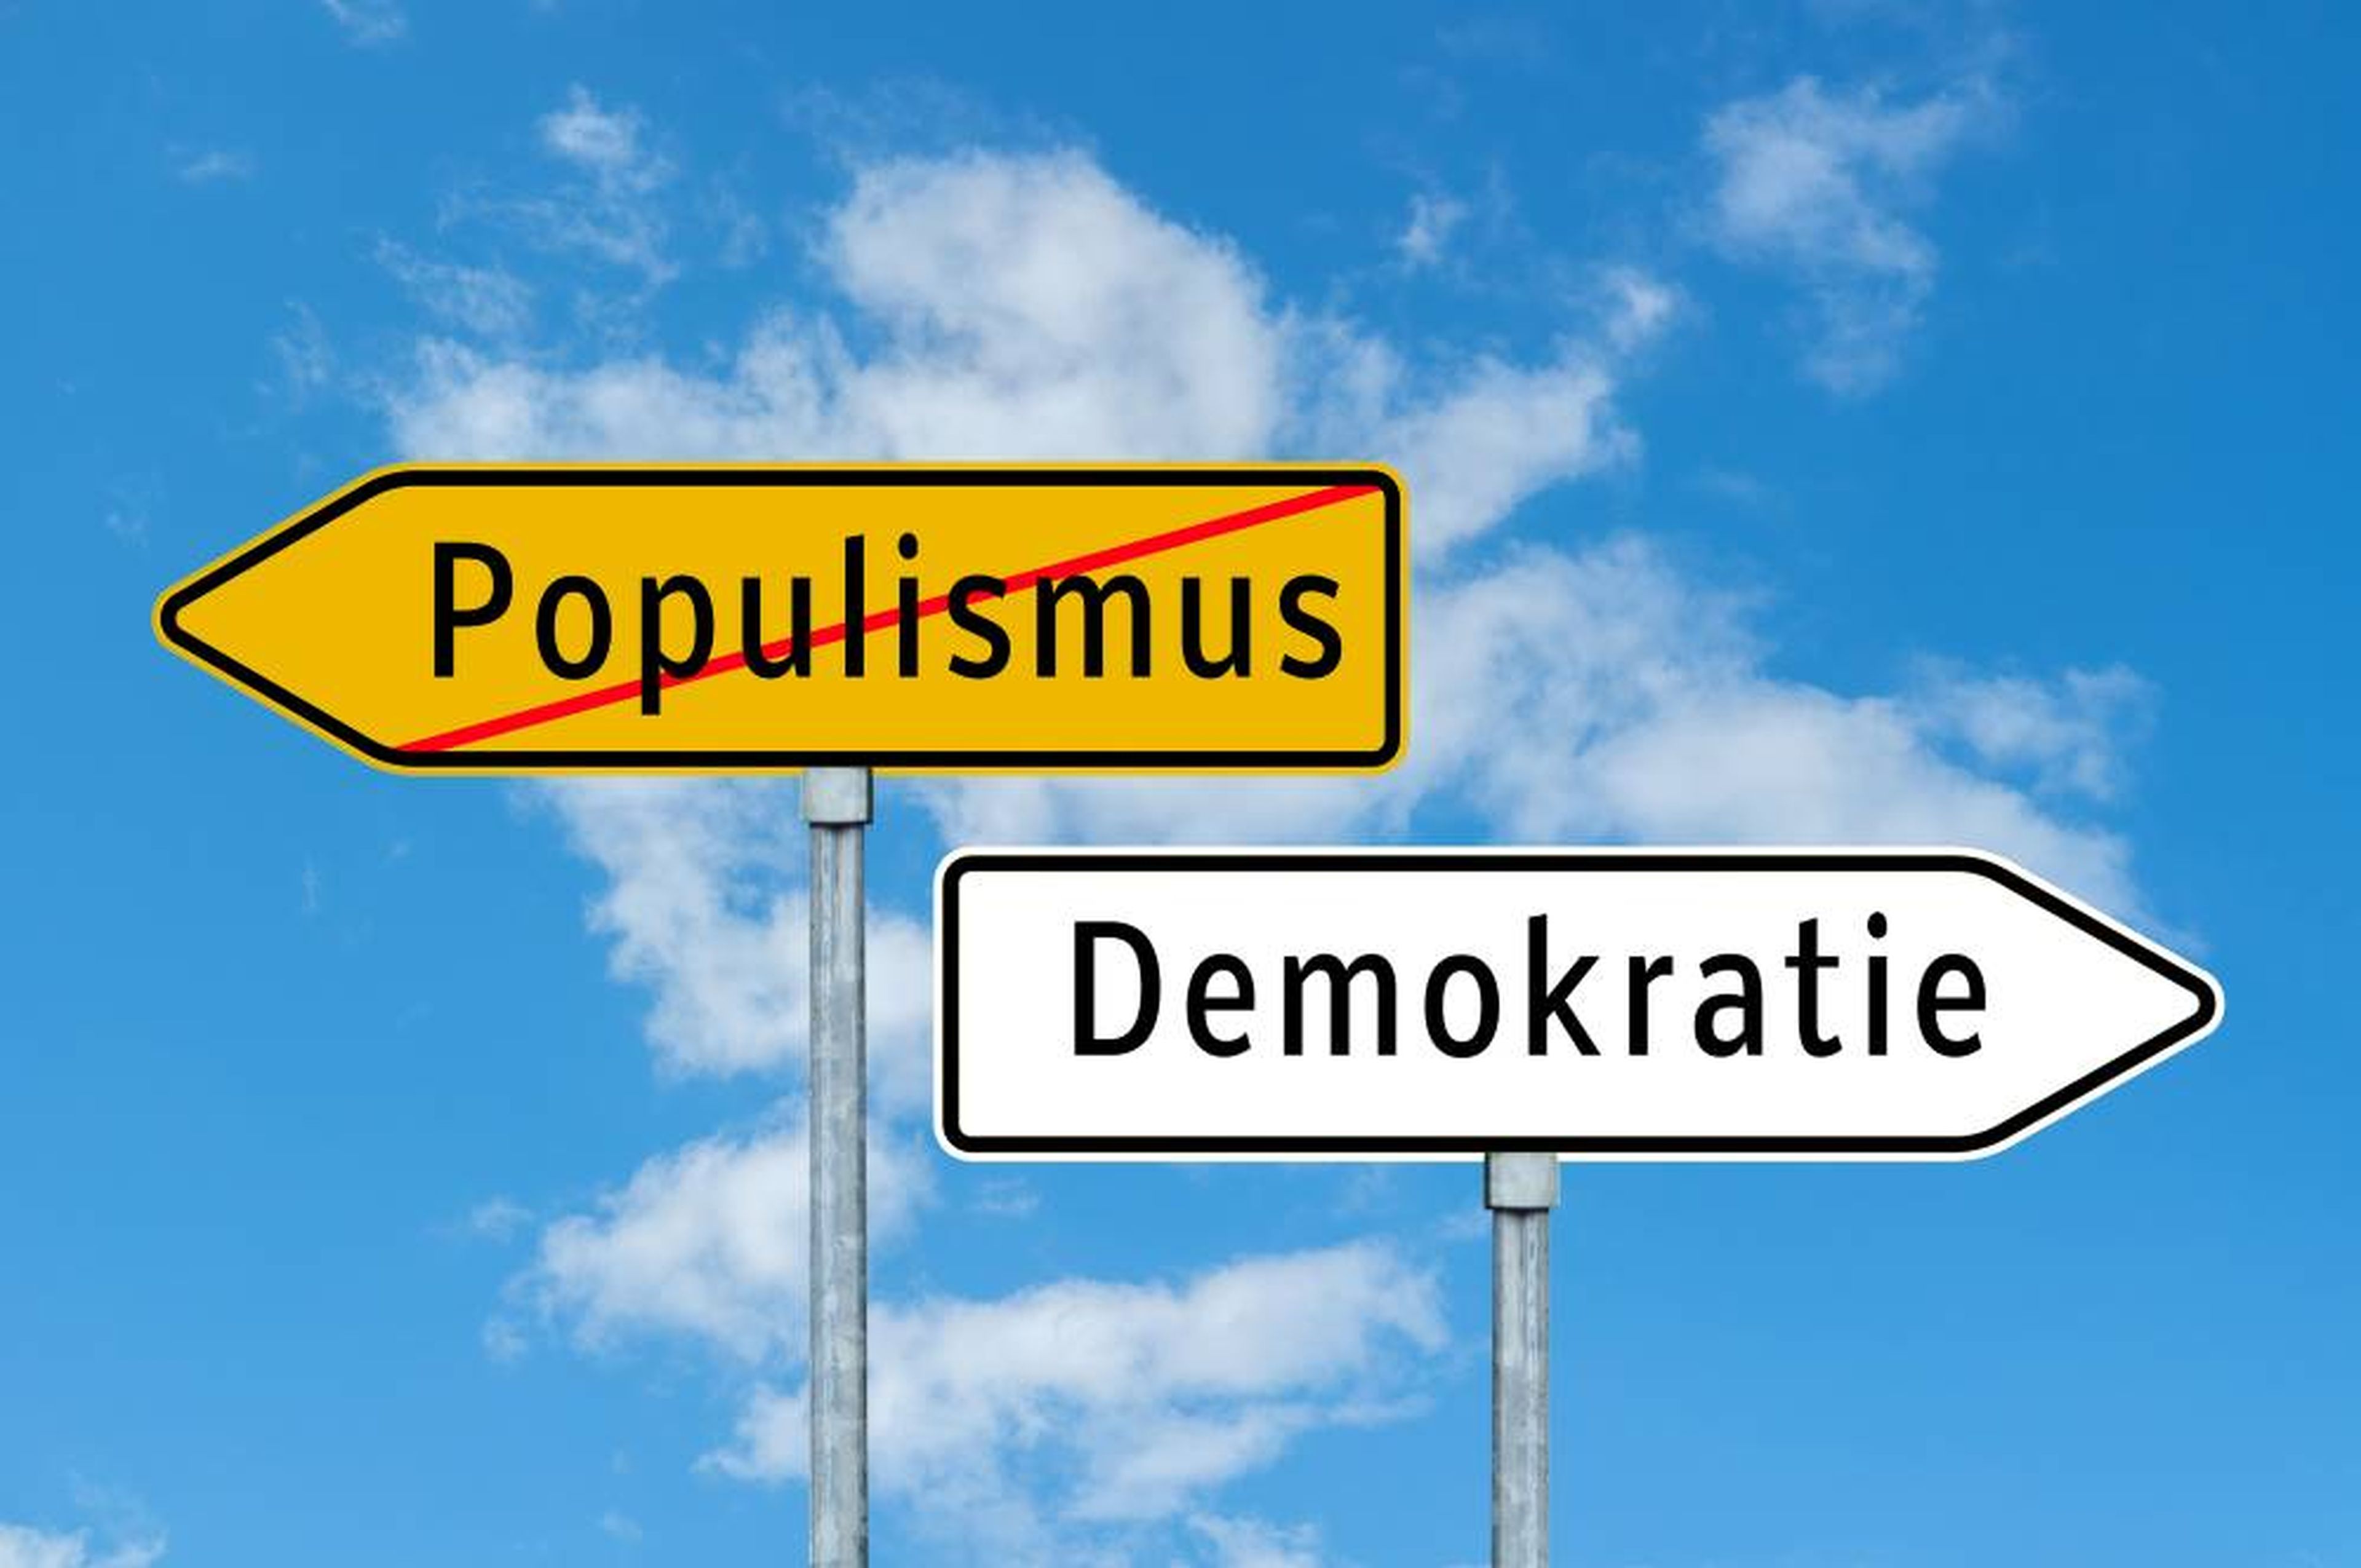 Populismo - Democracia